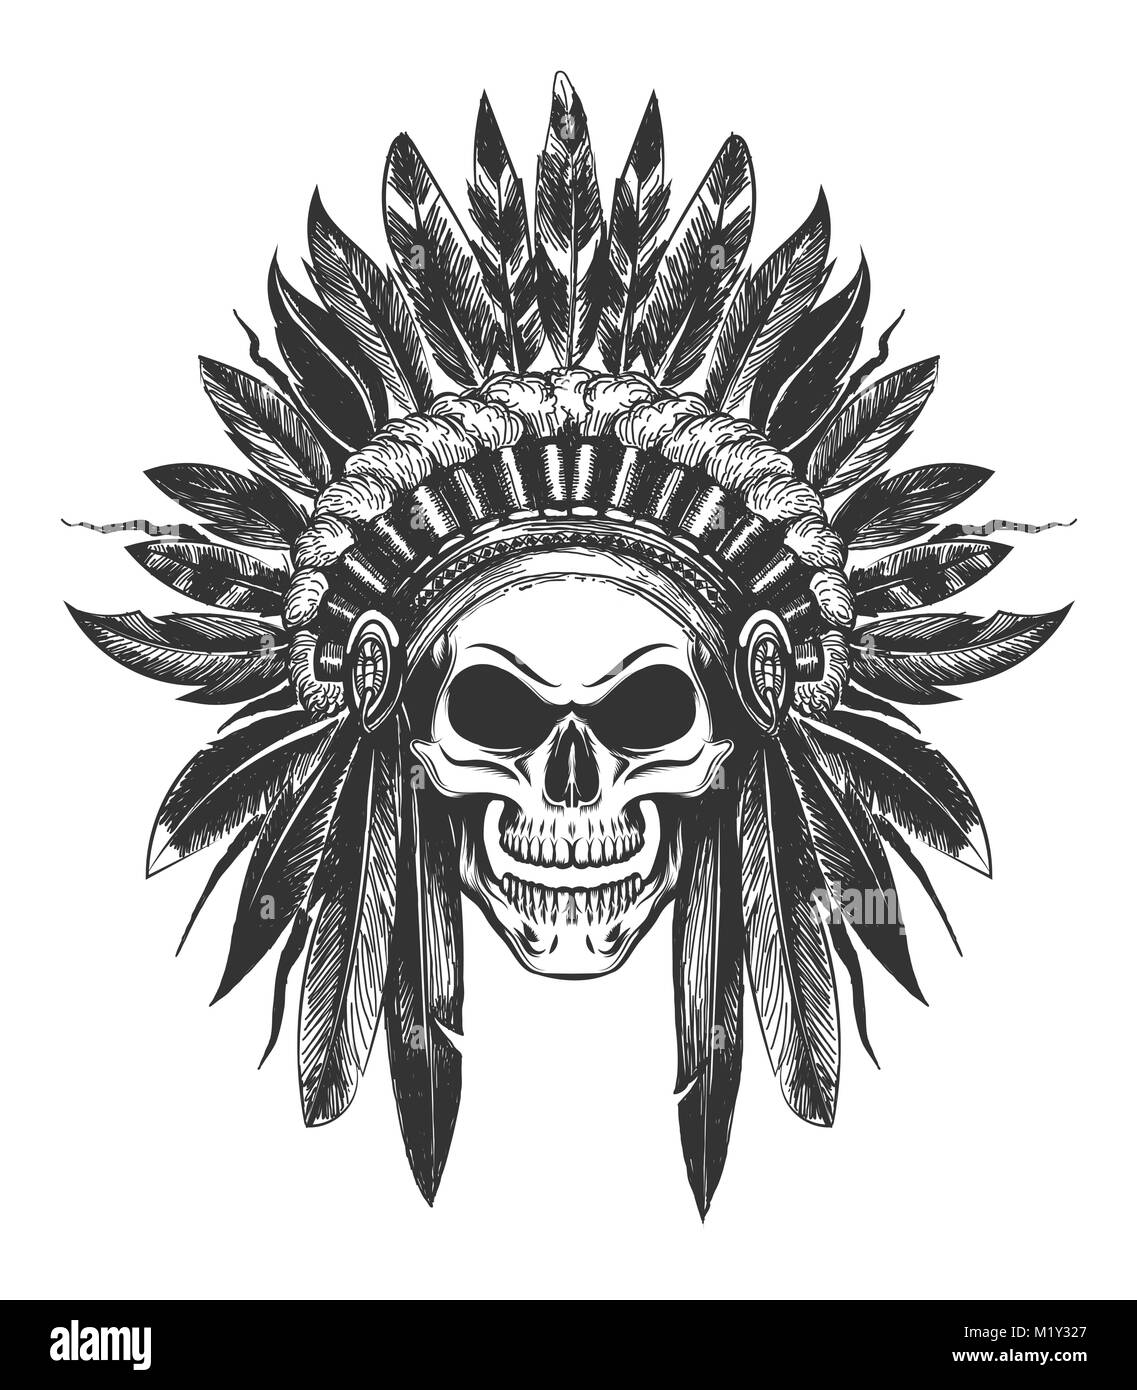 Cráneo humano en Native American Indian War Bonnet dibujado en estilo de tatuaje. Ilustración vectorial. Ilustración del Vector